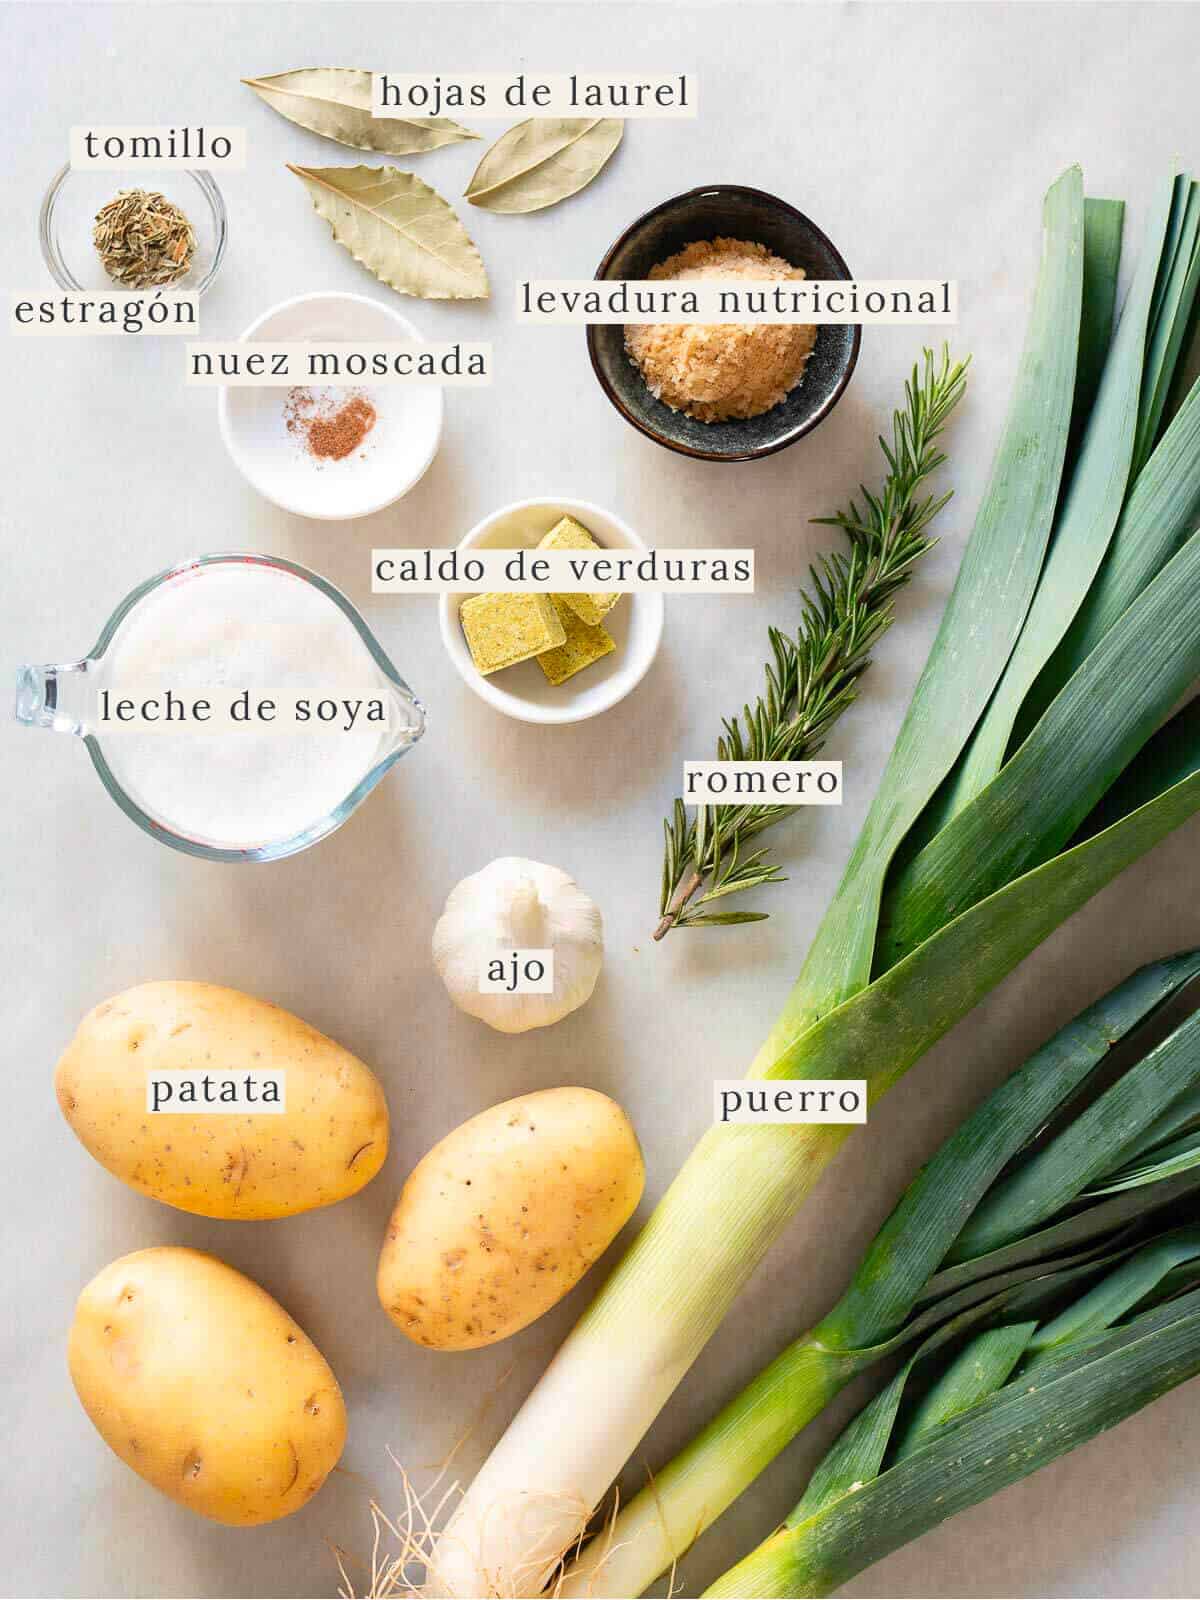 ingredientes para preparar la receta de crema de puerros y patatas.